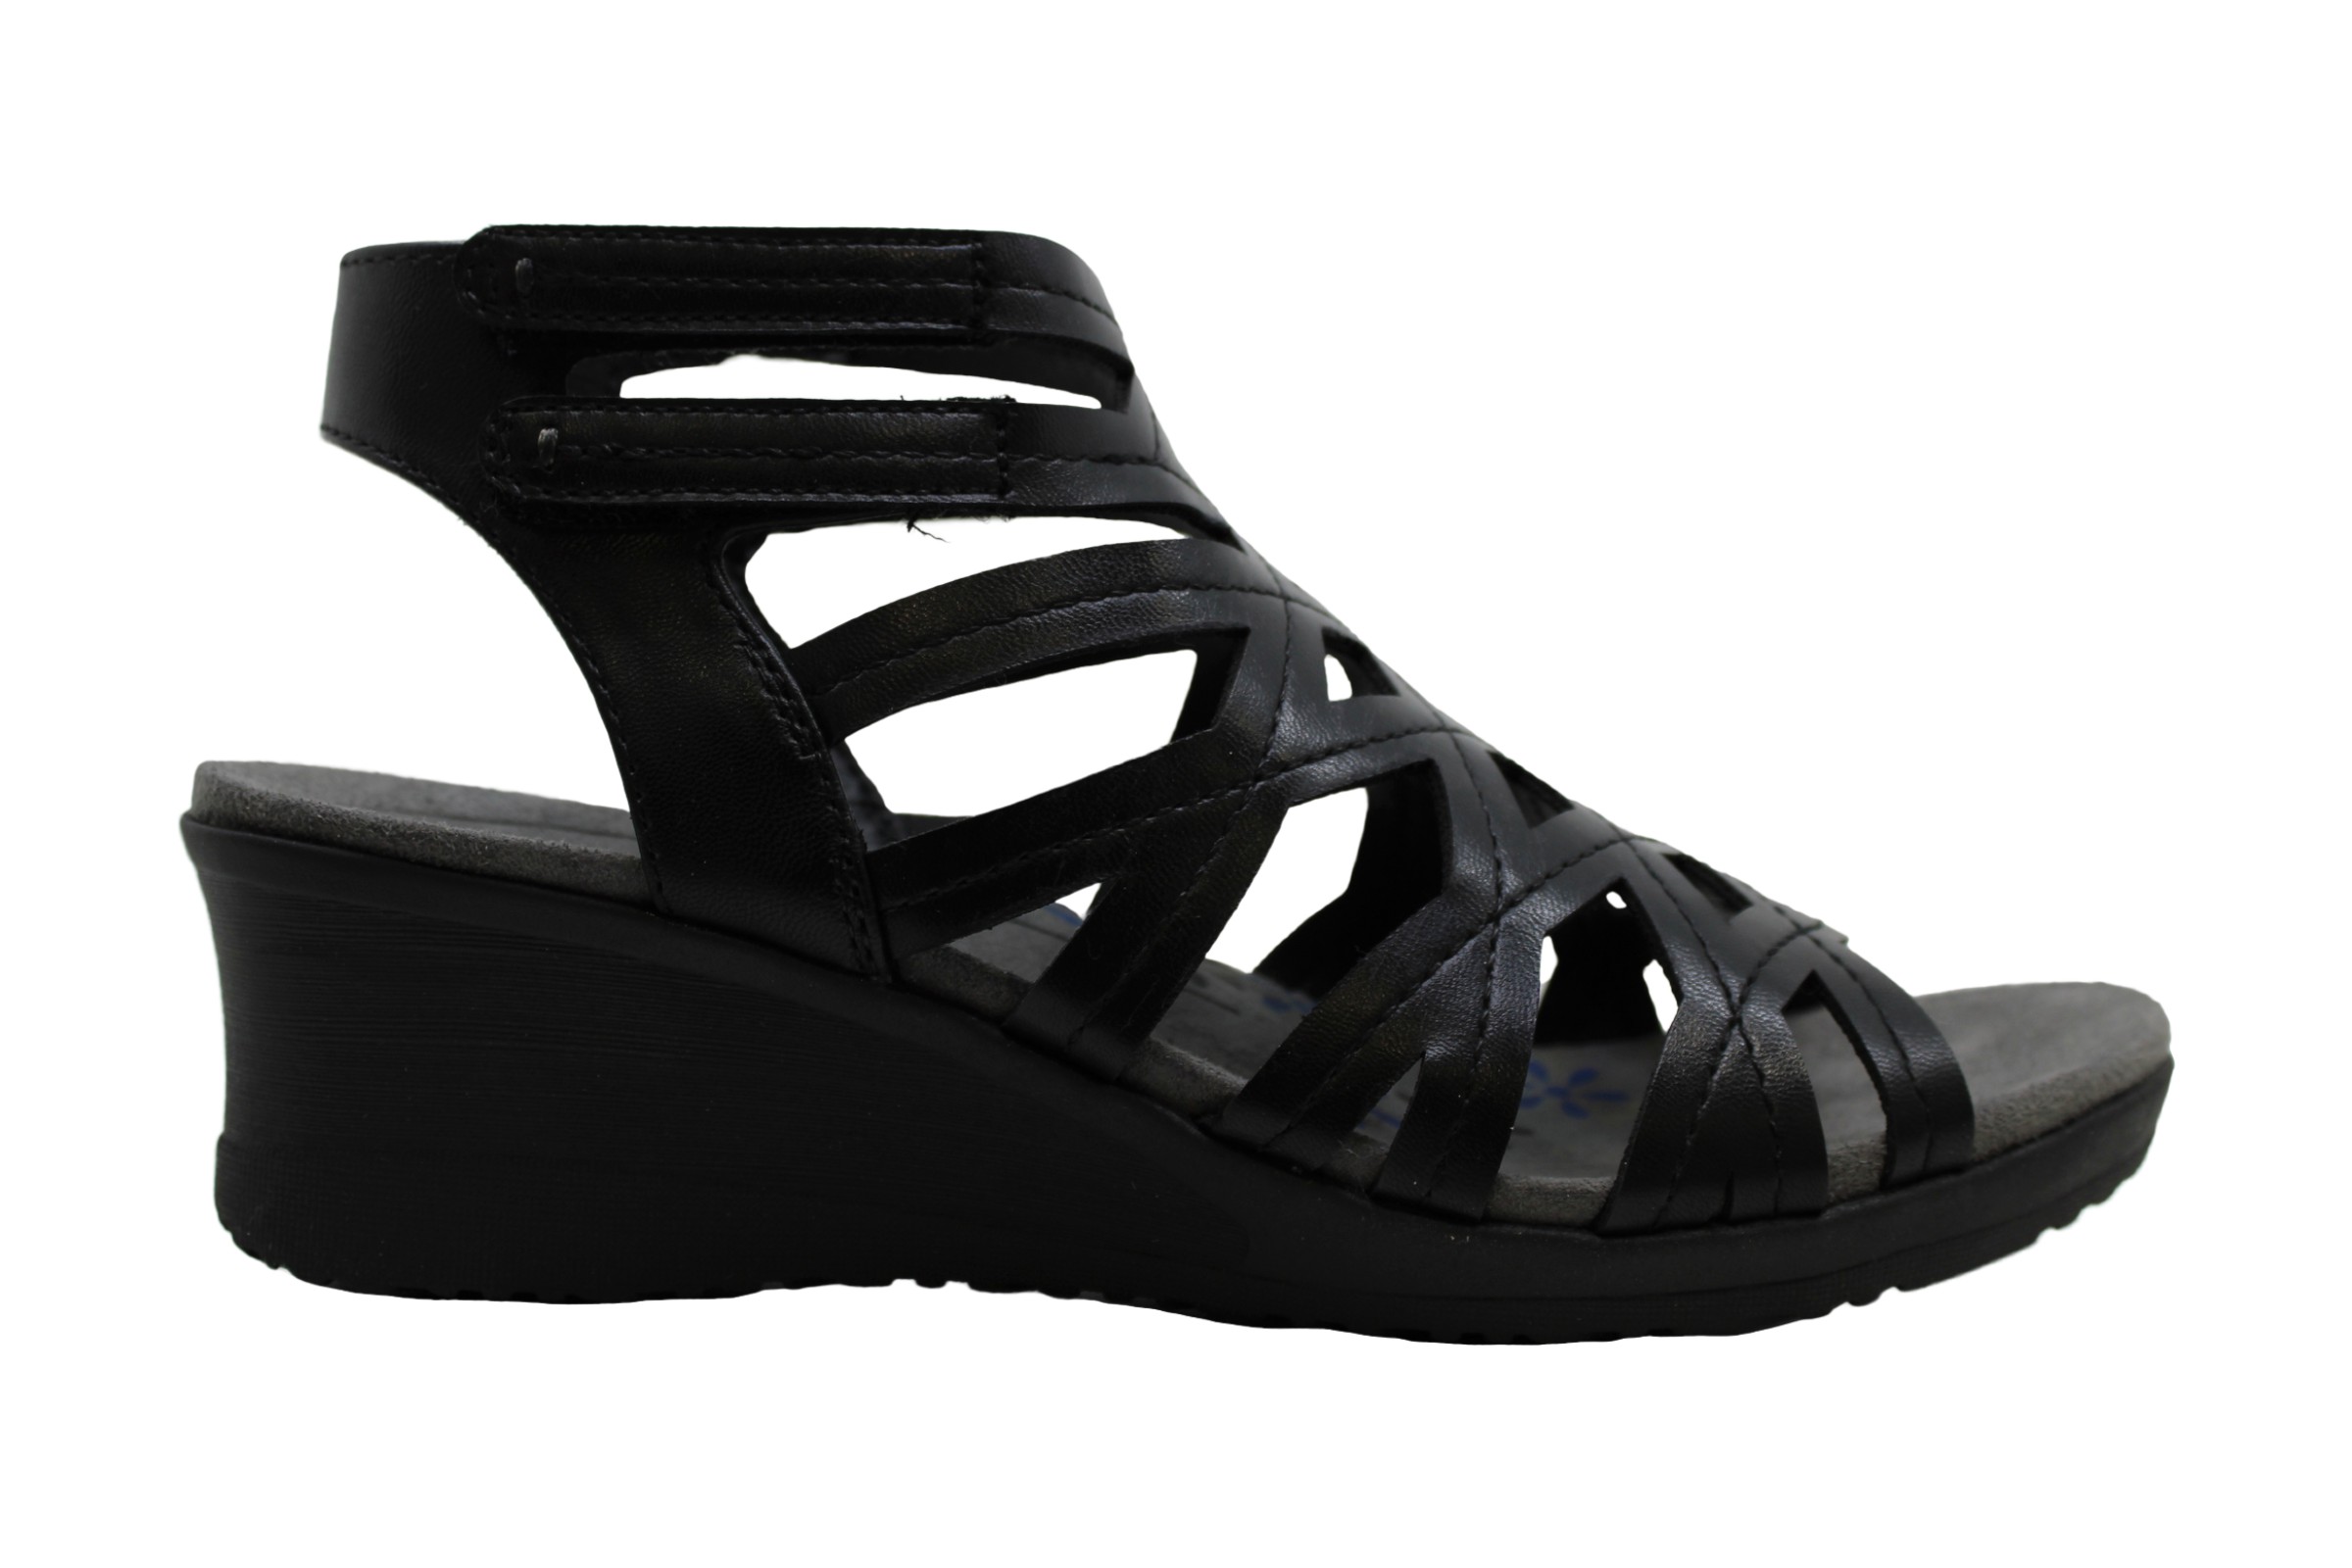 Bare Traps Womens Trella Open Toe Casual Ankle Strap Sandals Black Size 55 C8 825443965828 Ebay